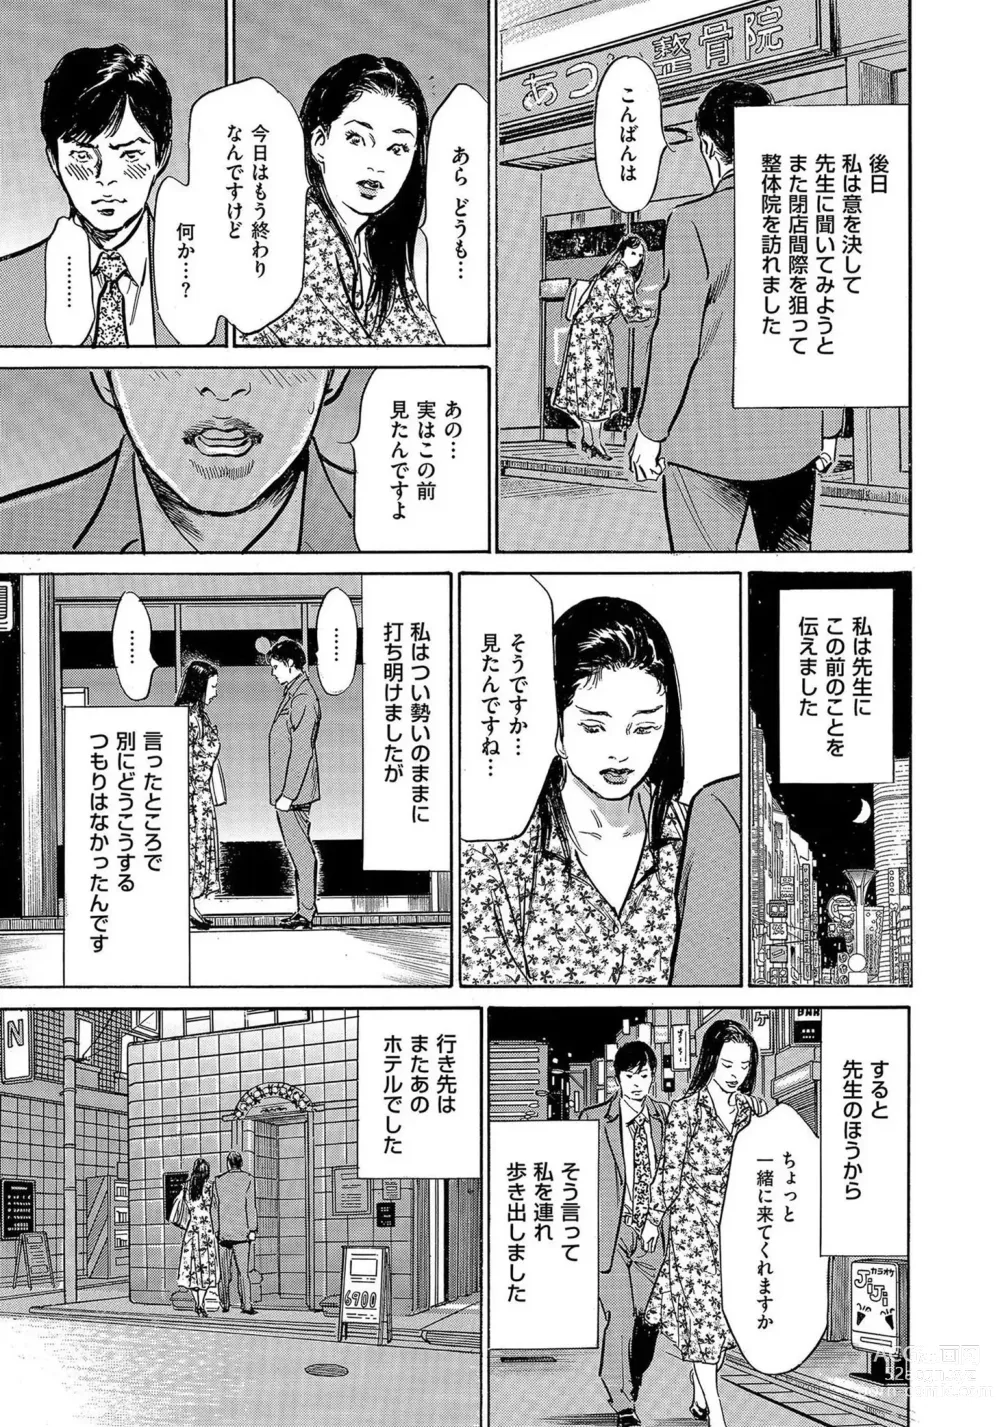 Page 8 of manga Saikou ni Toroketa Honki de Honto no Hanashi 16 episodes